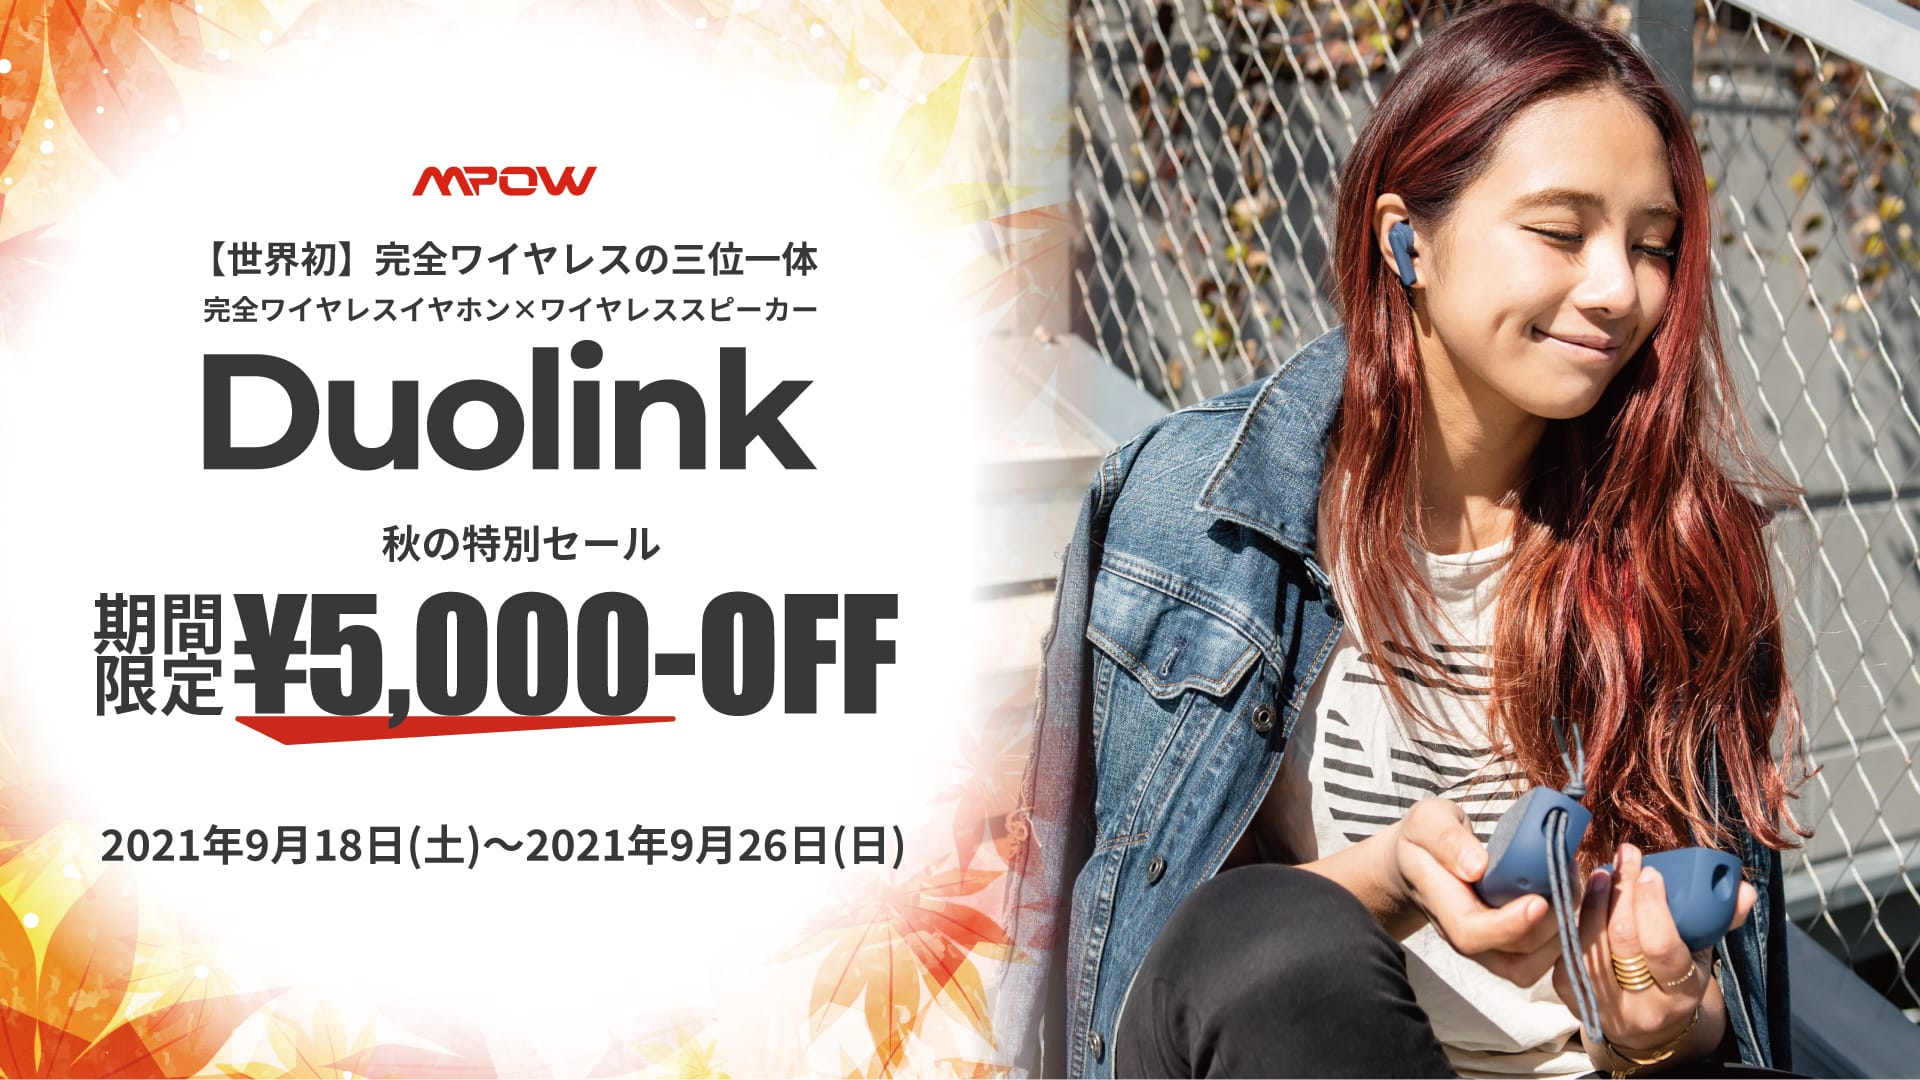 MPOWの完全ワイヤレスイヤフォン＆スピーカー「Duolink」が5,000円オフ